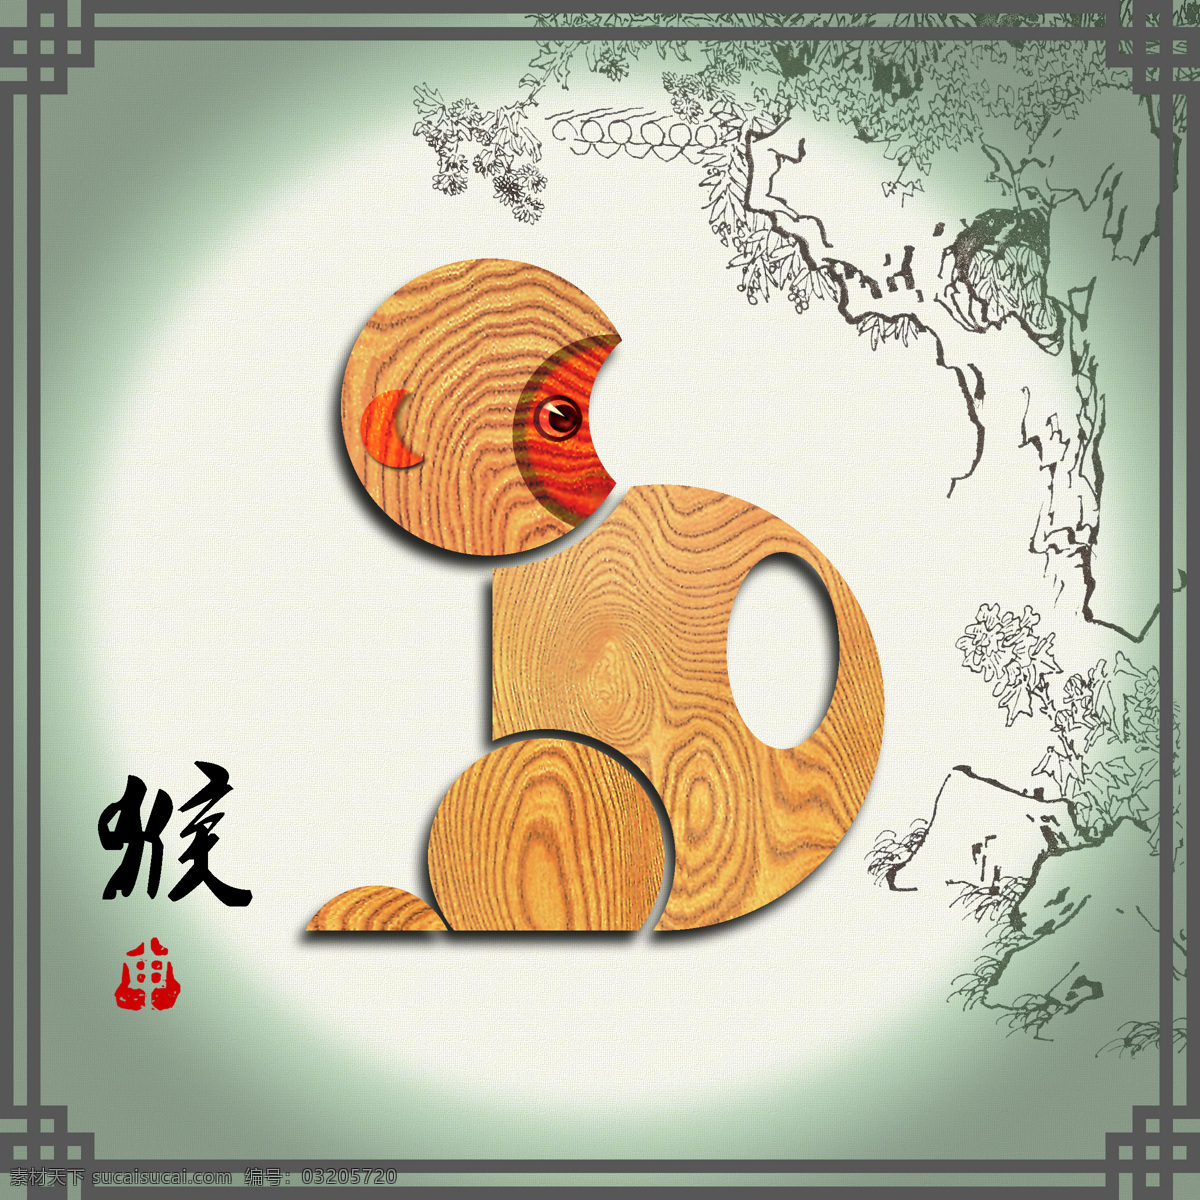 十二生肖 猴 设计图 传统文化 中国元素 天干 地支 木纹 装饰画 高清 特色设计 文化艺术